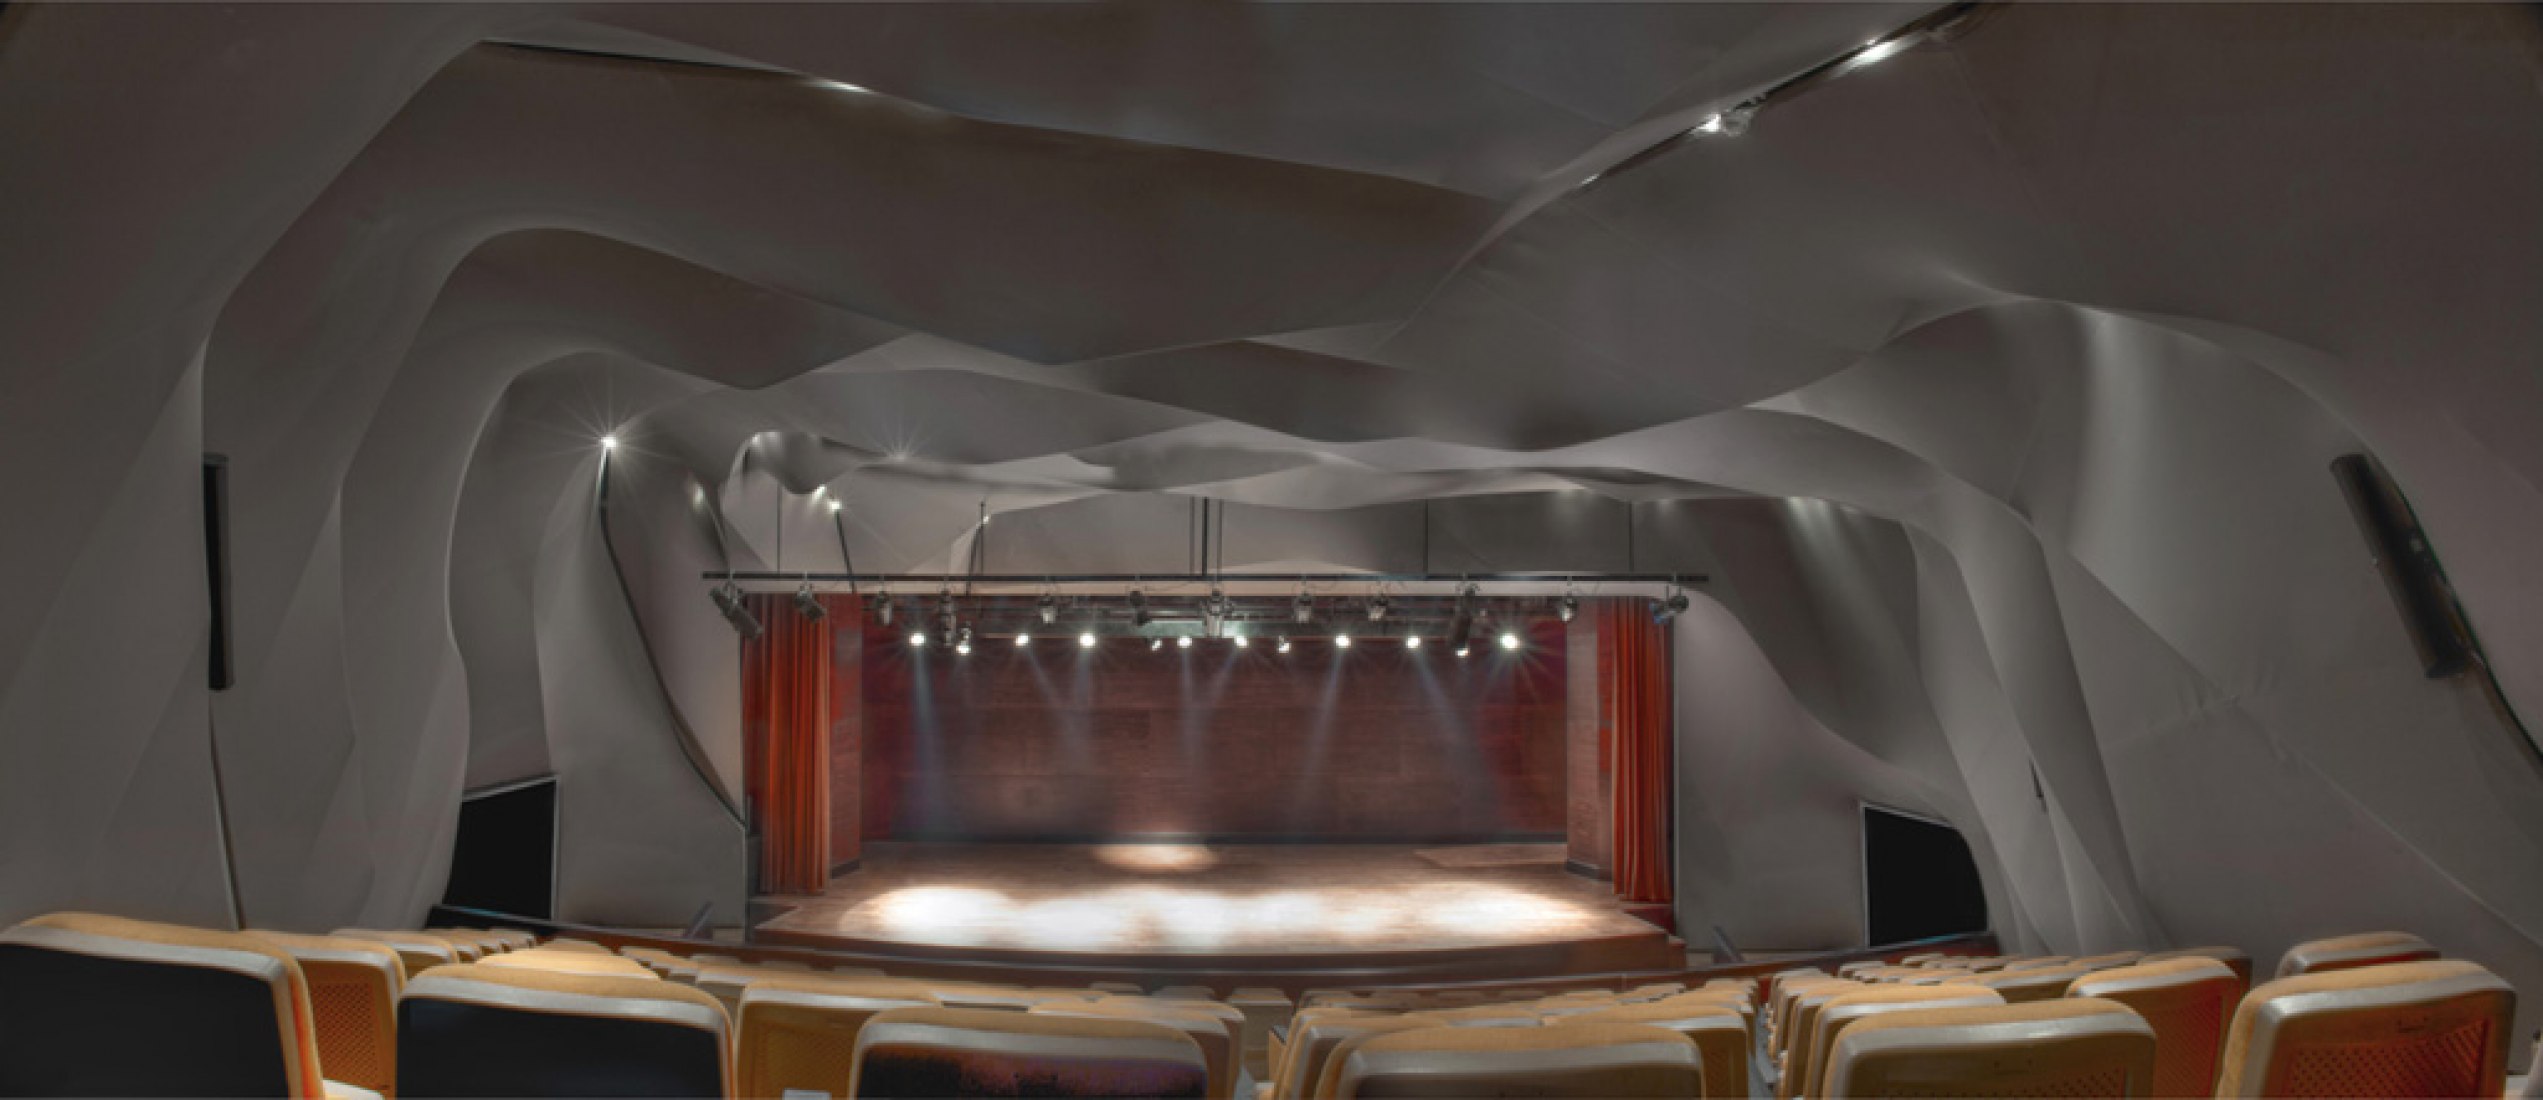 Vista frontal del escenario. Teatro Al Qasba por MAGMA ARCHITECTURE. Fotografía cortesía de Magma Architecture. © Torsten Seidel.